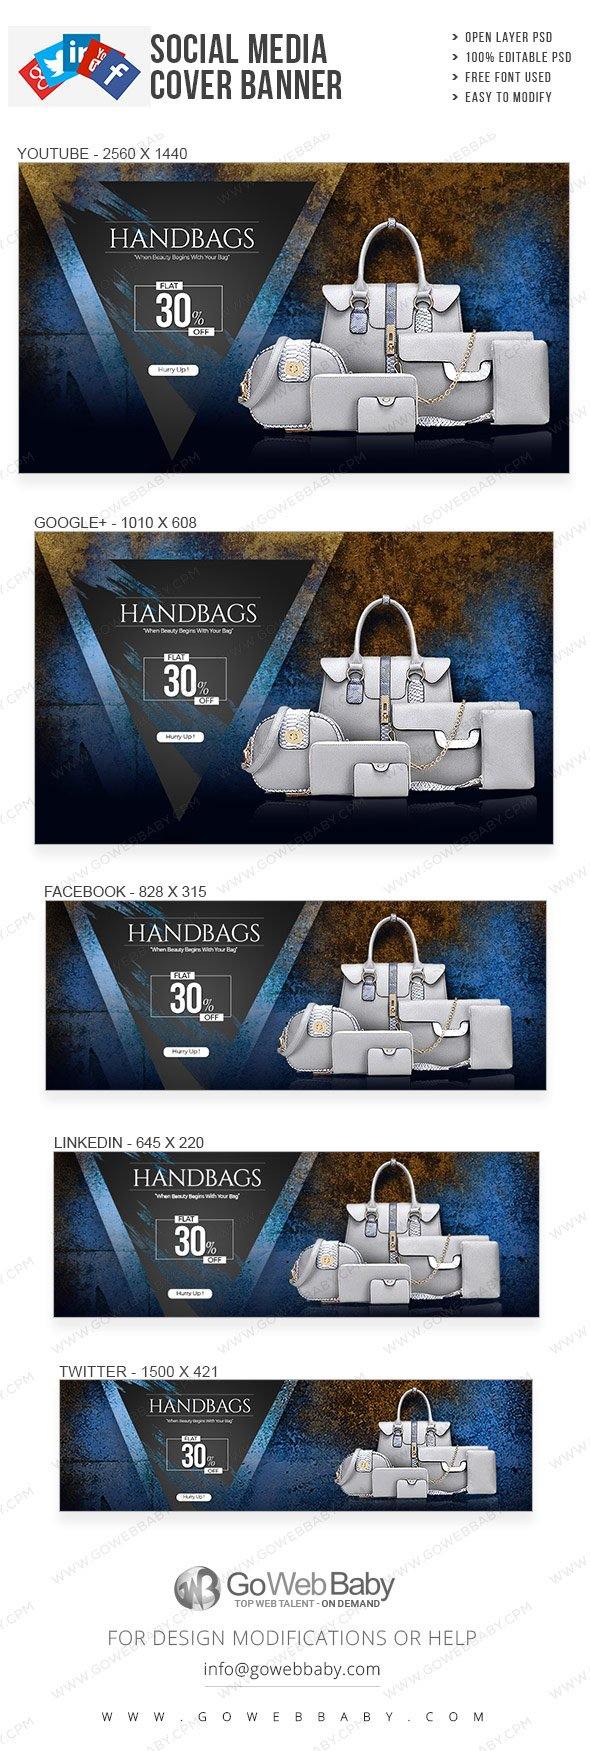 Social Media Cover Banner - Fashion Handbag Catalogue For Website Marketing - GoWebBaby.Com